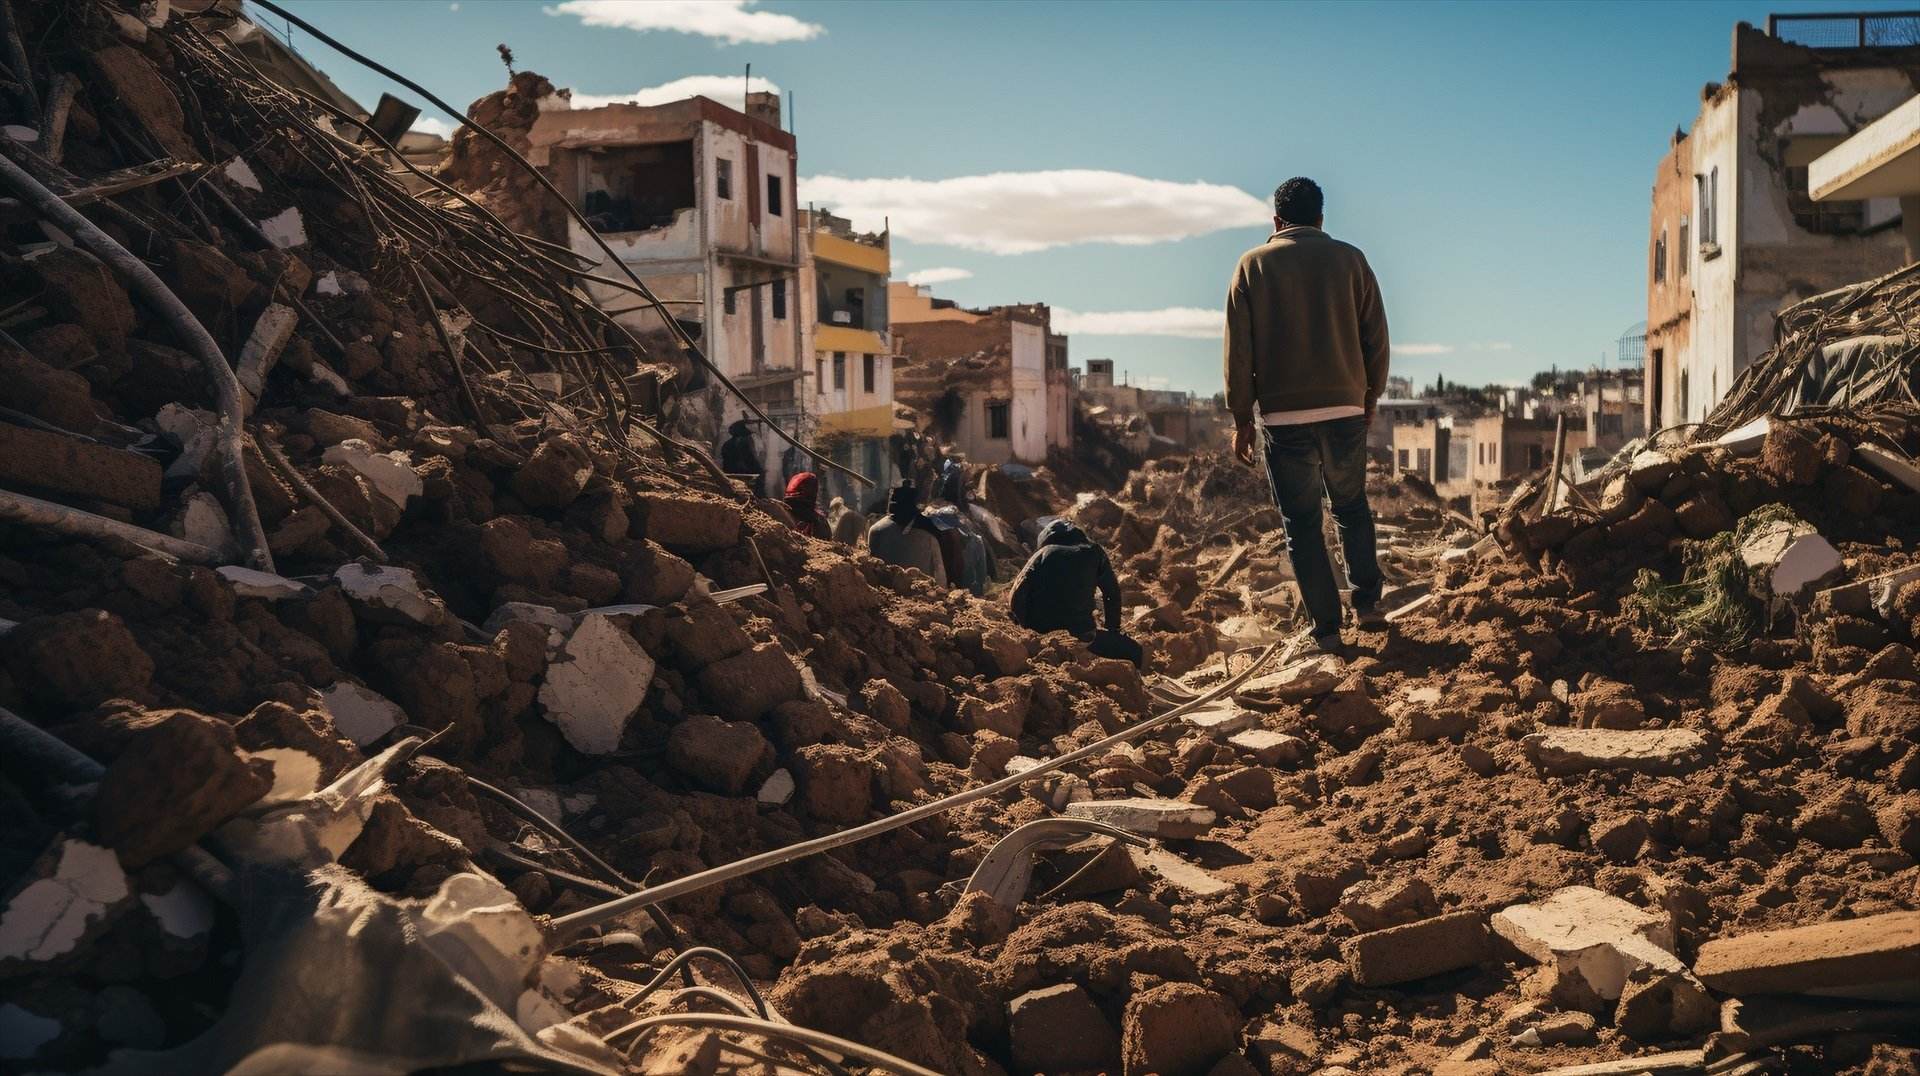 CaixaBank elimina el cost de les transferències al Marroc i Líbia després dels desastres naturals